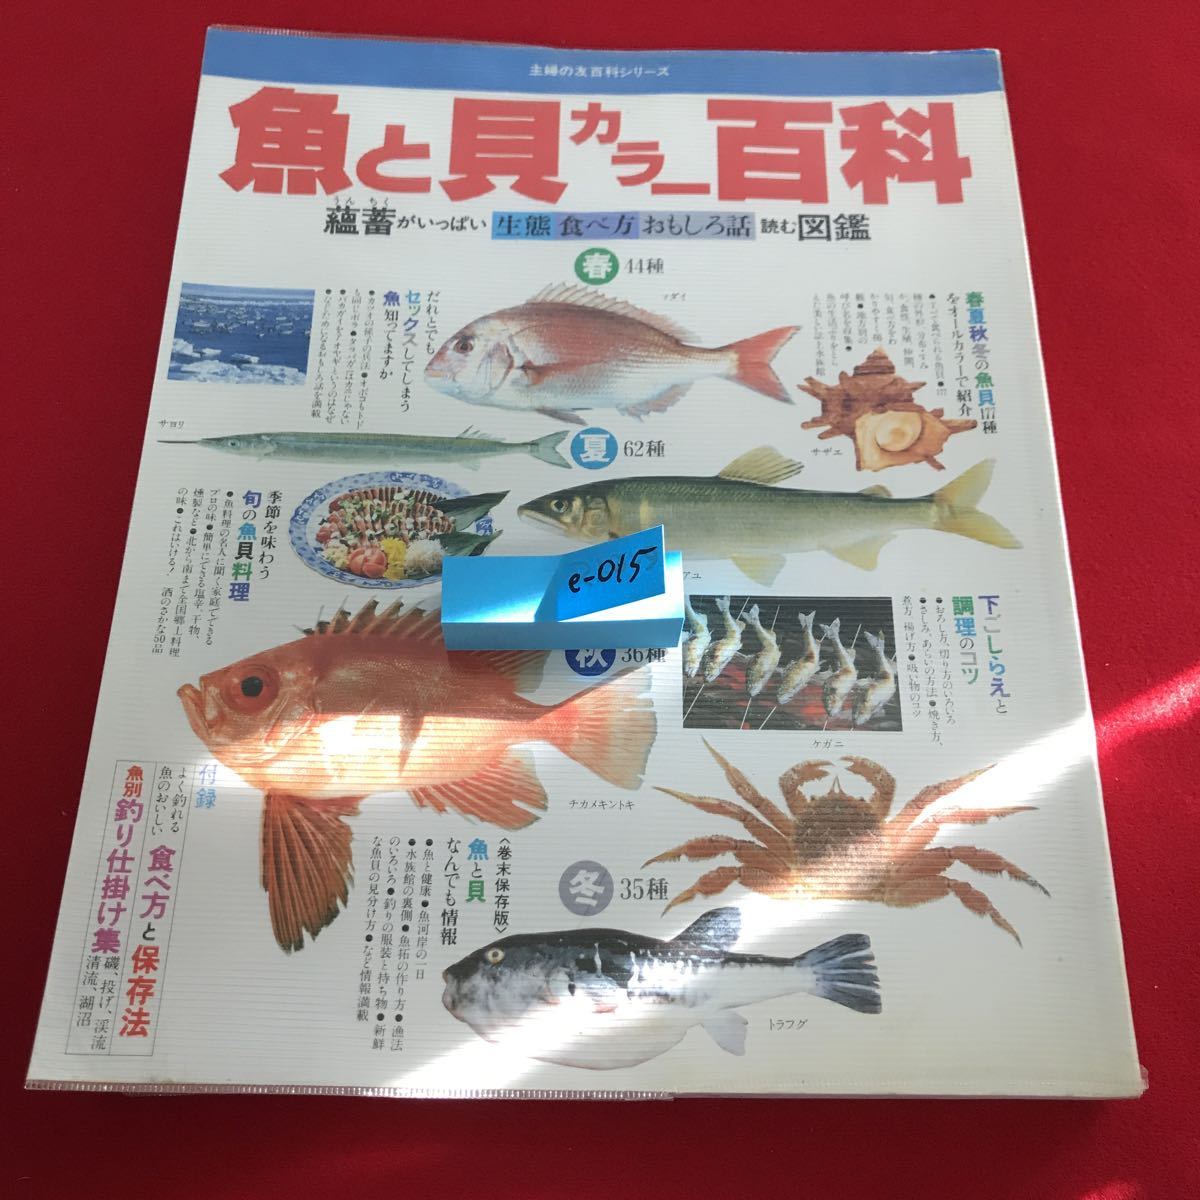 e-015 生態 食べ方 おもしろ話 蘊蓄がいっぱい 読む図鑑 魚と貝 カラー 百科 付録無し ※12_画像1